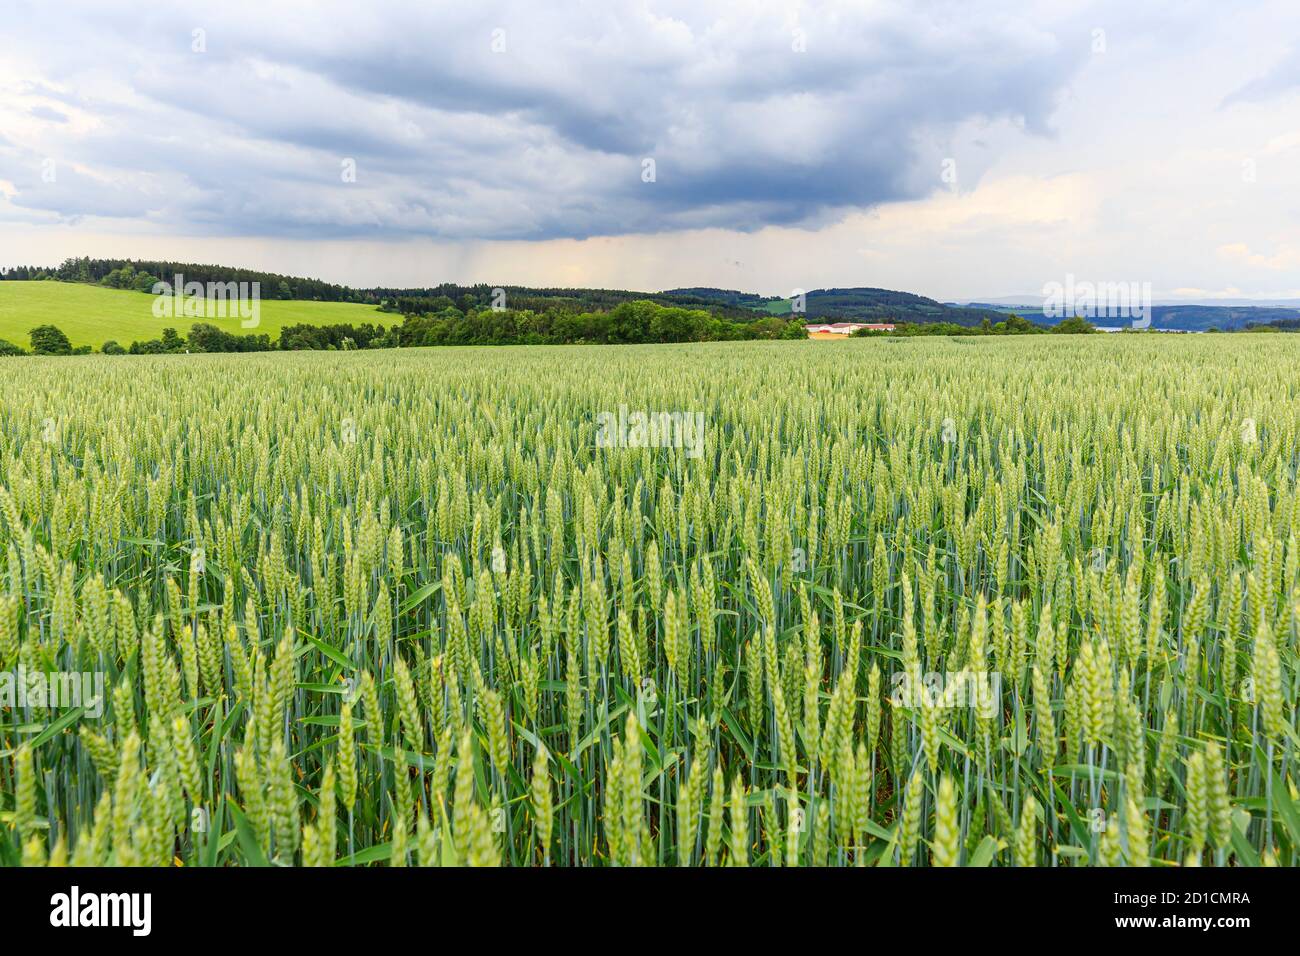 Die Ernte ist nahe, ein Sturm mit heftigem Regen kommt auf, Thüringen, Germay Stockfoto